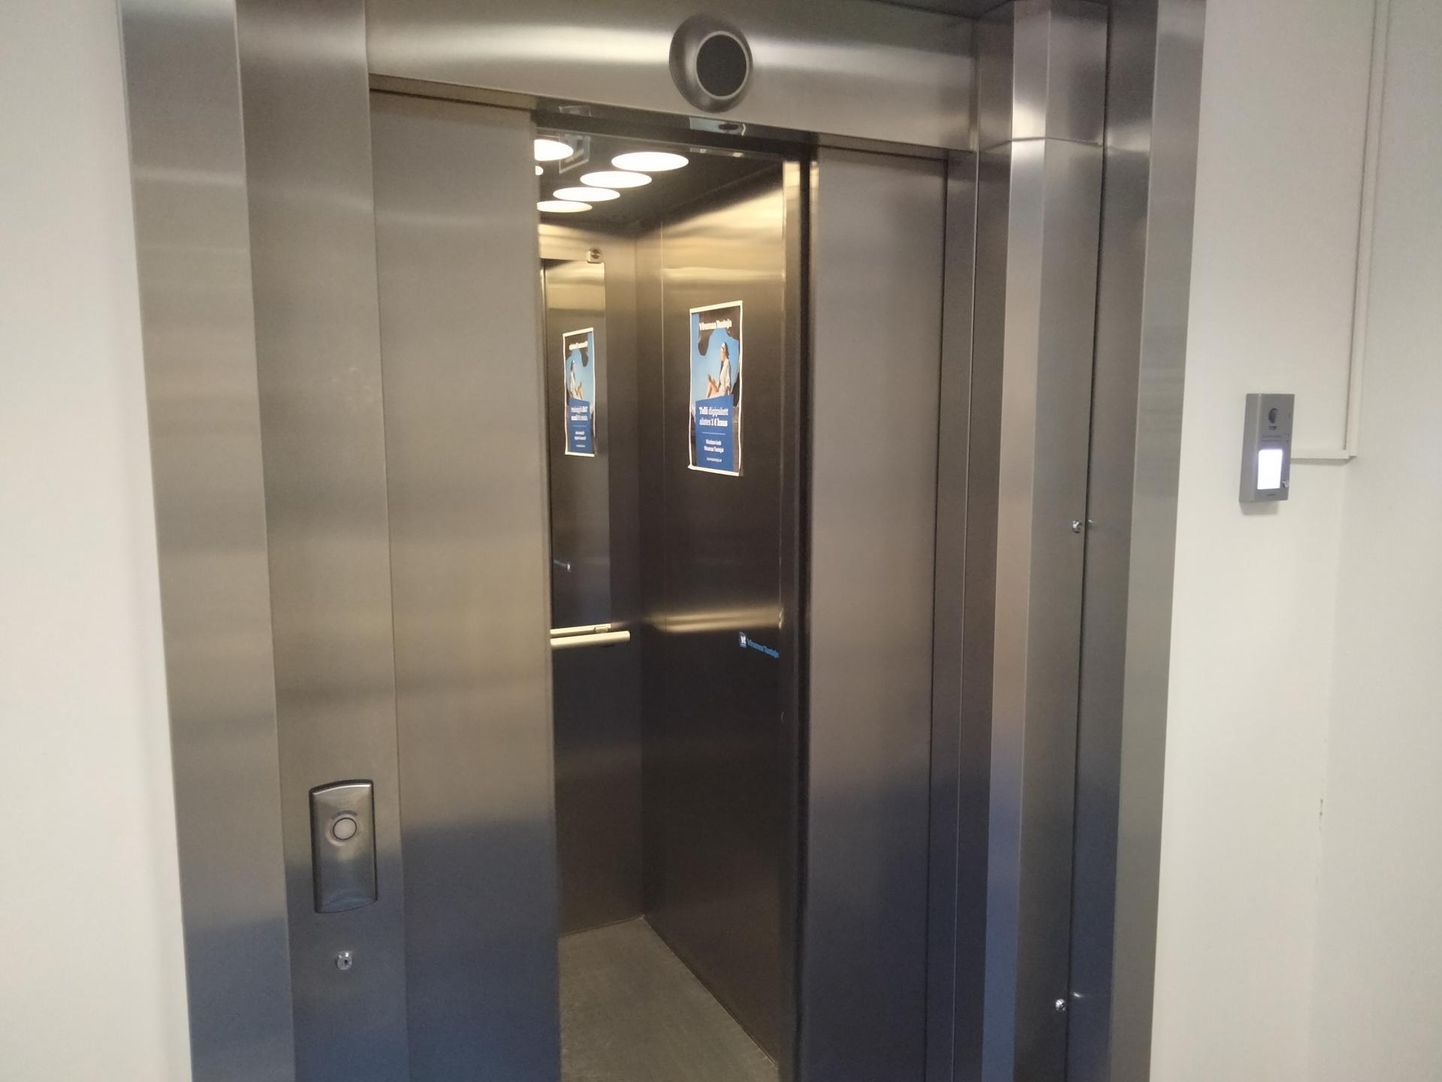 Pärnus jäi üheksa inimest umbes veerand tunniks lifti kinni. Foto on illustreeriv.